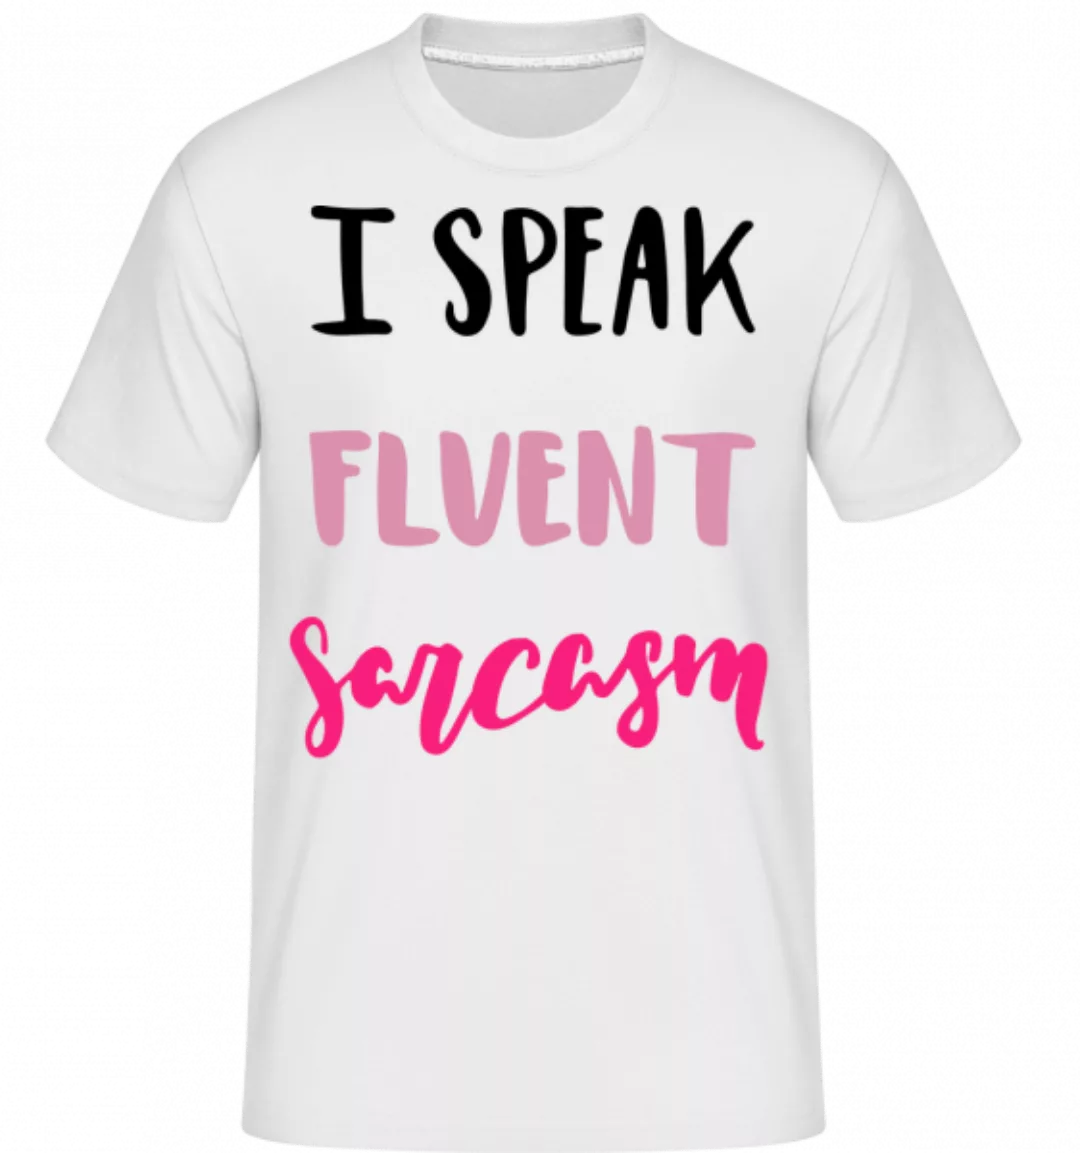 I Speak Fluent Sarcasm · Shirtinator Männer T-Shirt günstig online kaufen